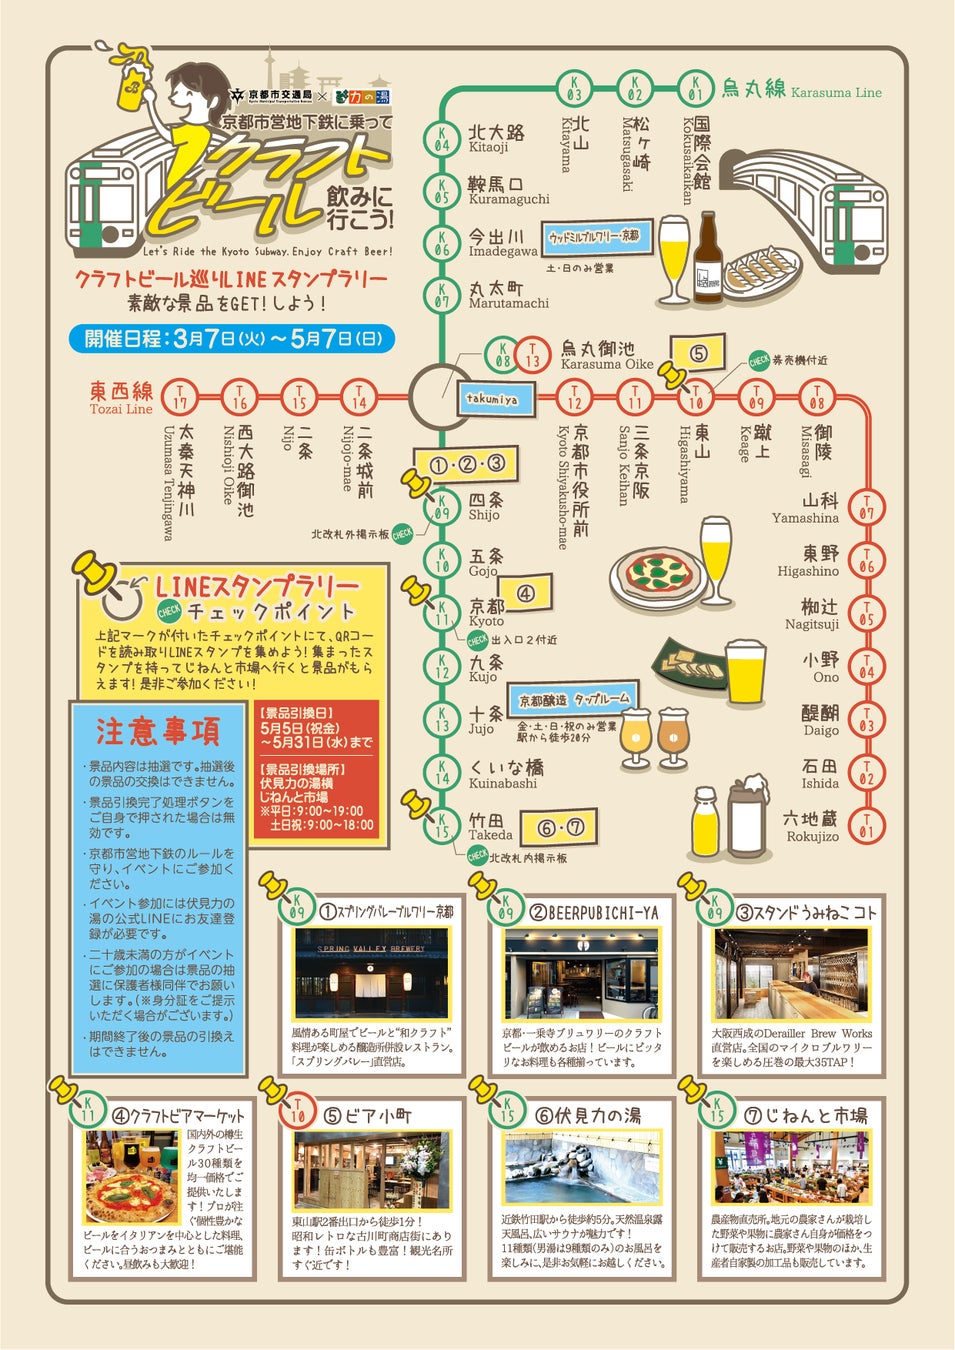 ～京都市営地下鉄に乗ってクラフトビールを飲みに行こう～クラフトビール巡りスタンプラリー